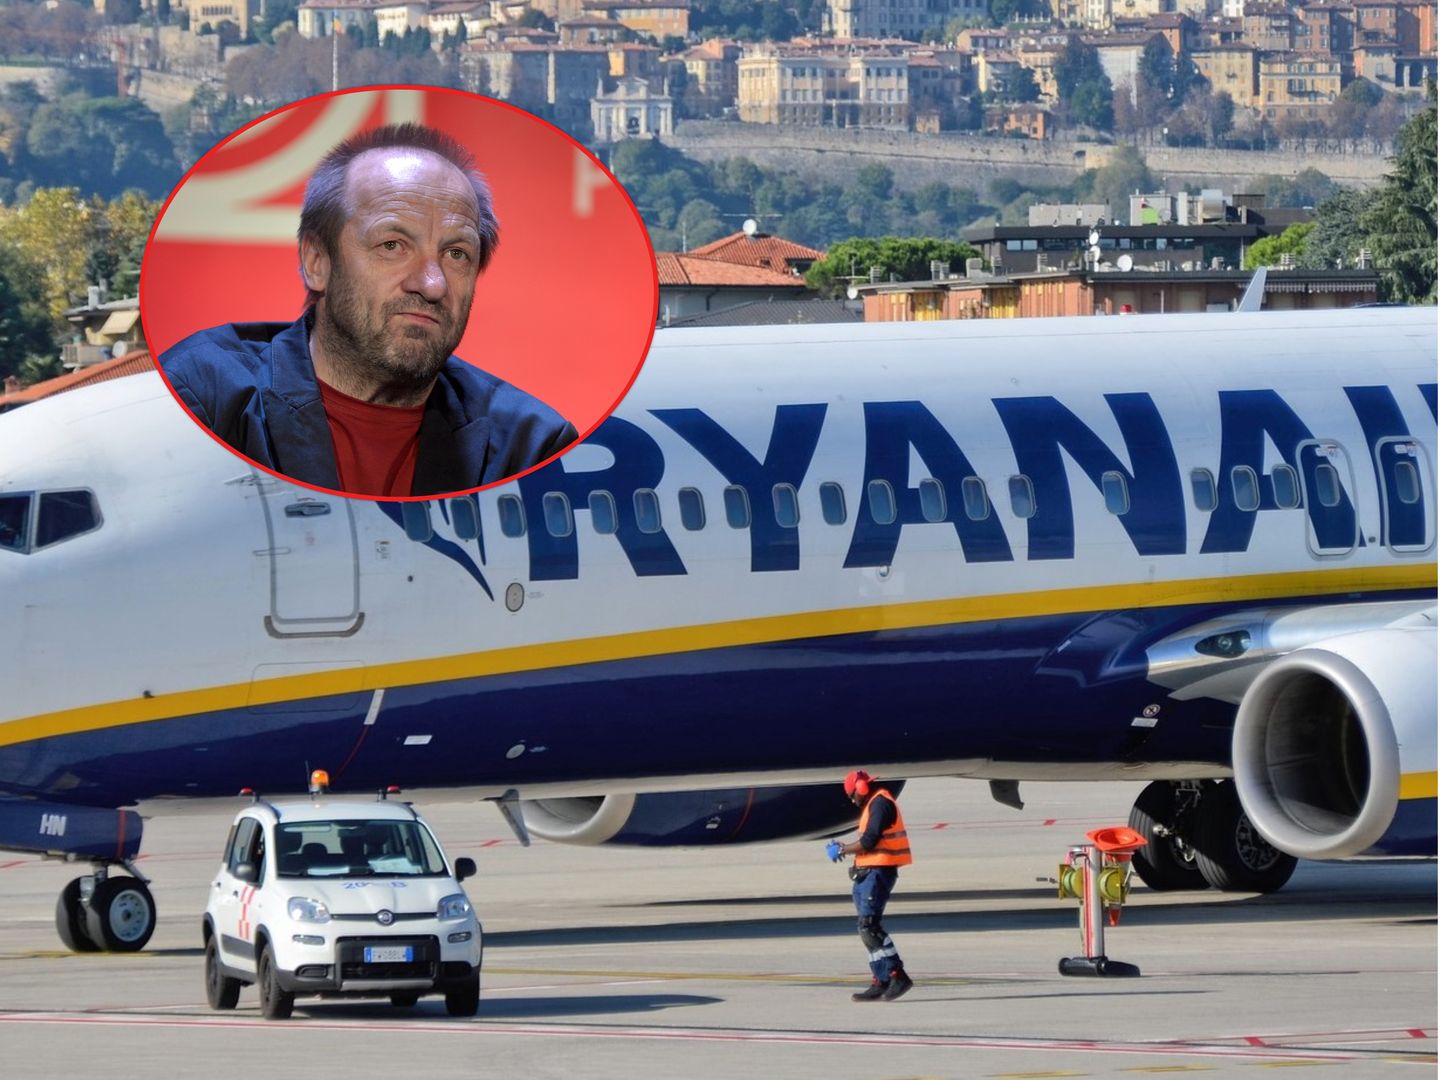 "Nigdy więcej nie wsiądę do Ryanaira". Firma odpowiada na zarzuty